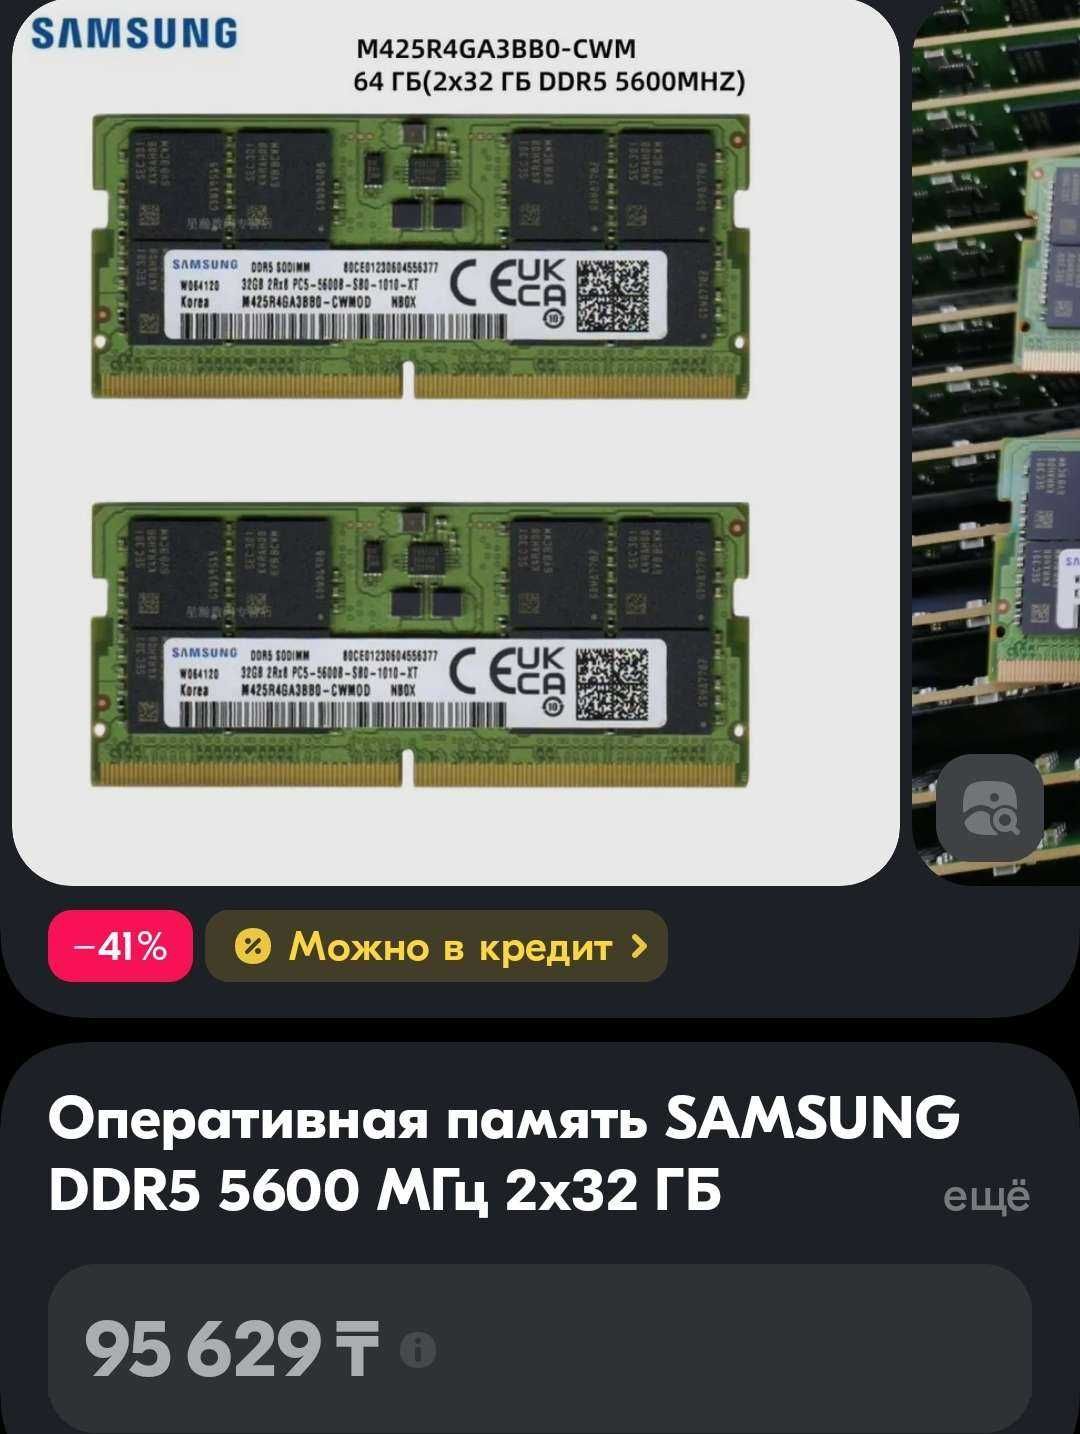 SAMSUNG DDR5 5600 МГц 2X32 2 штуки по 32 гб